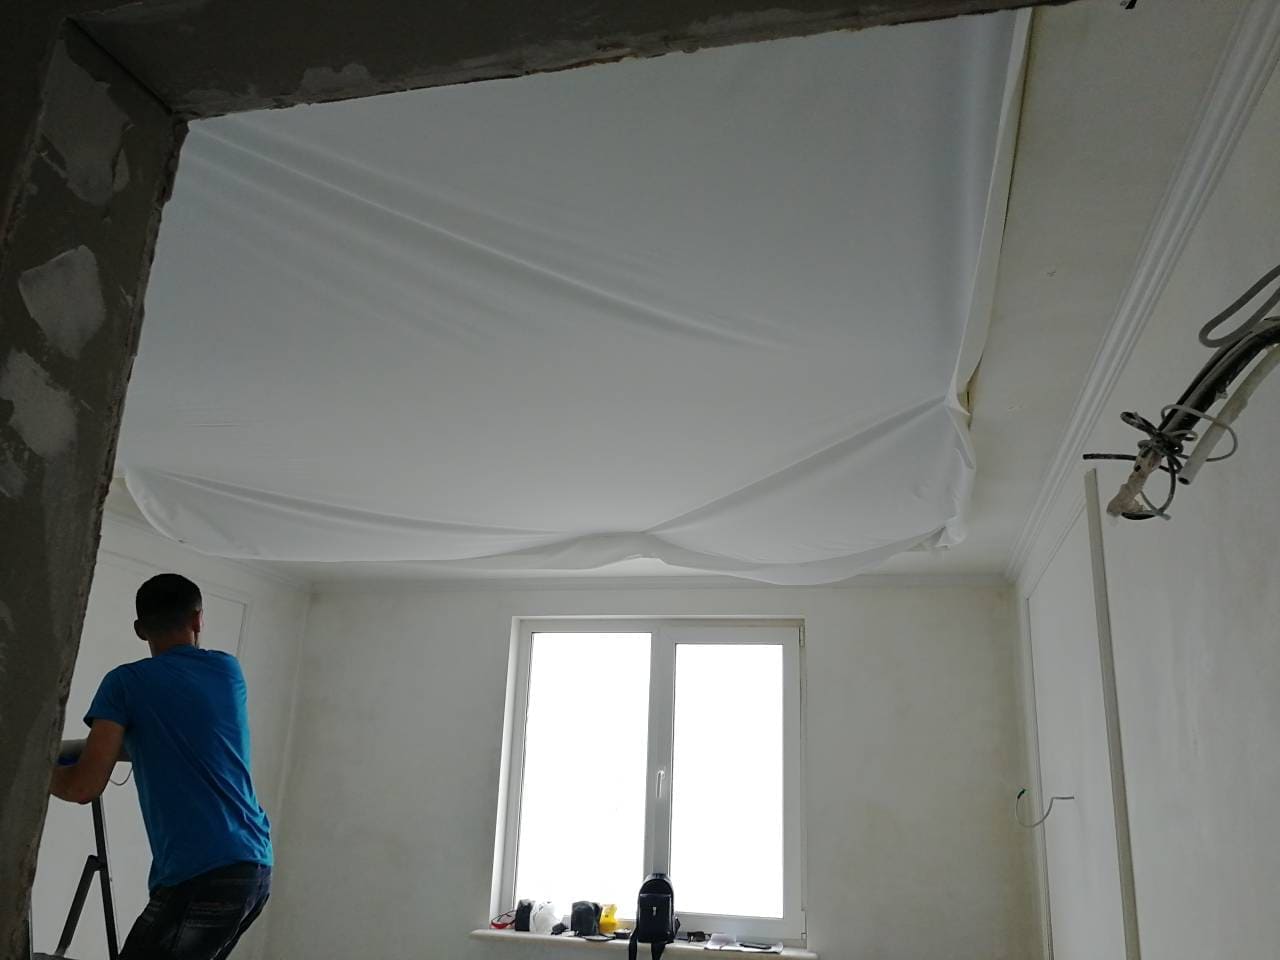 тканевый натяжной потолок дескор на кухне